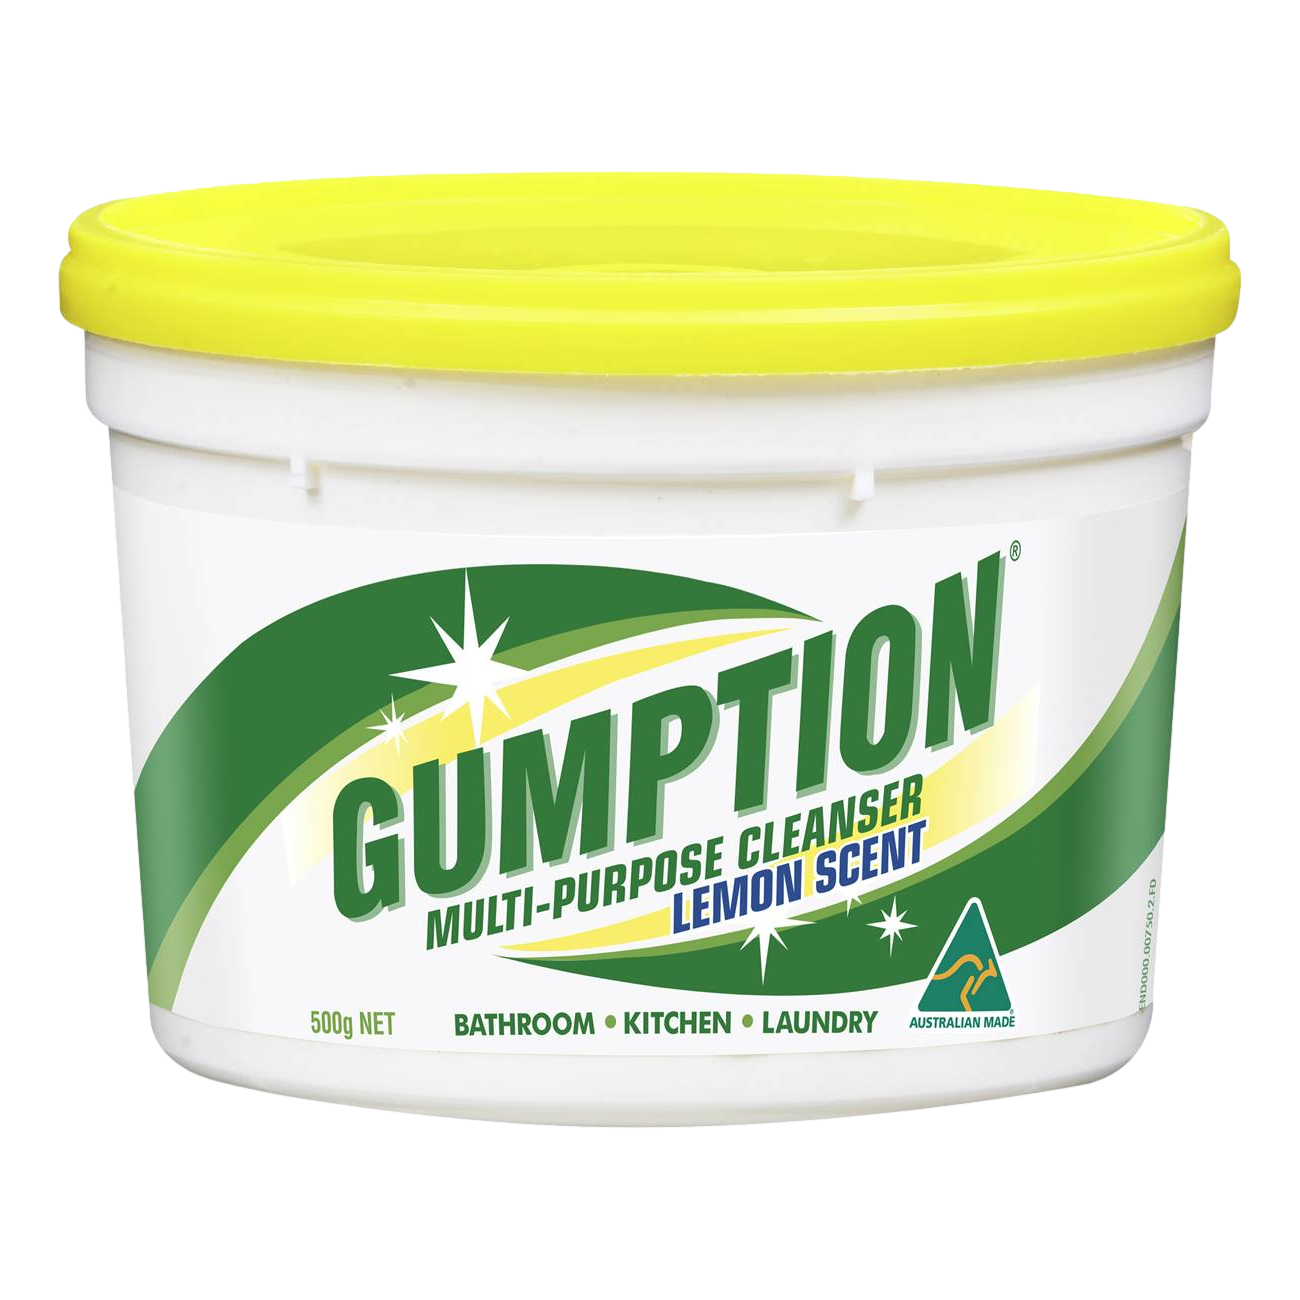 Gumption Multi-Purpose Cleanser Lemon Scent 500g